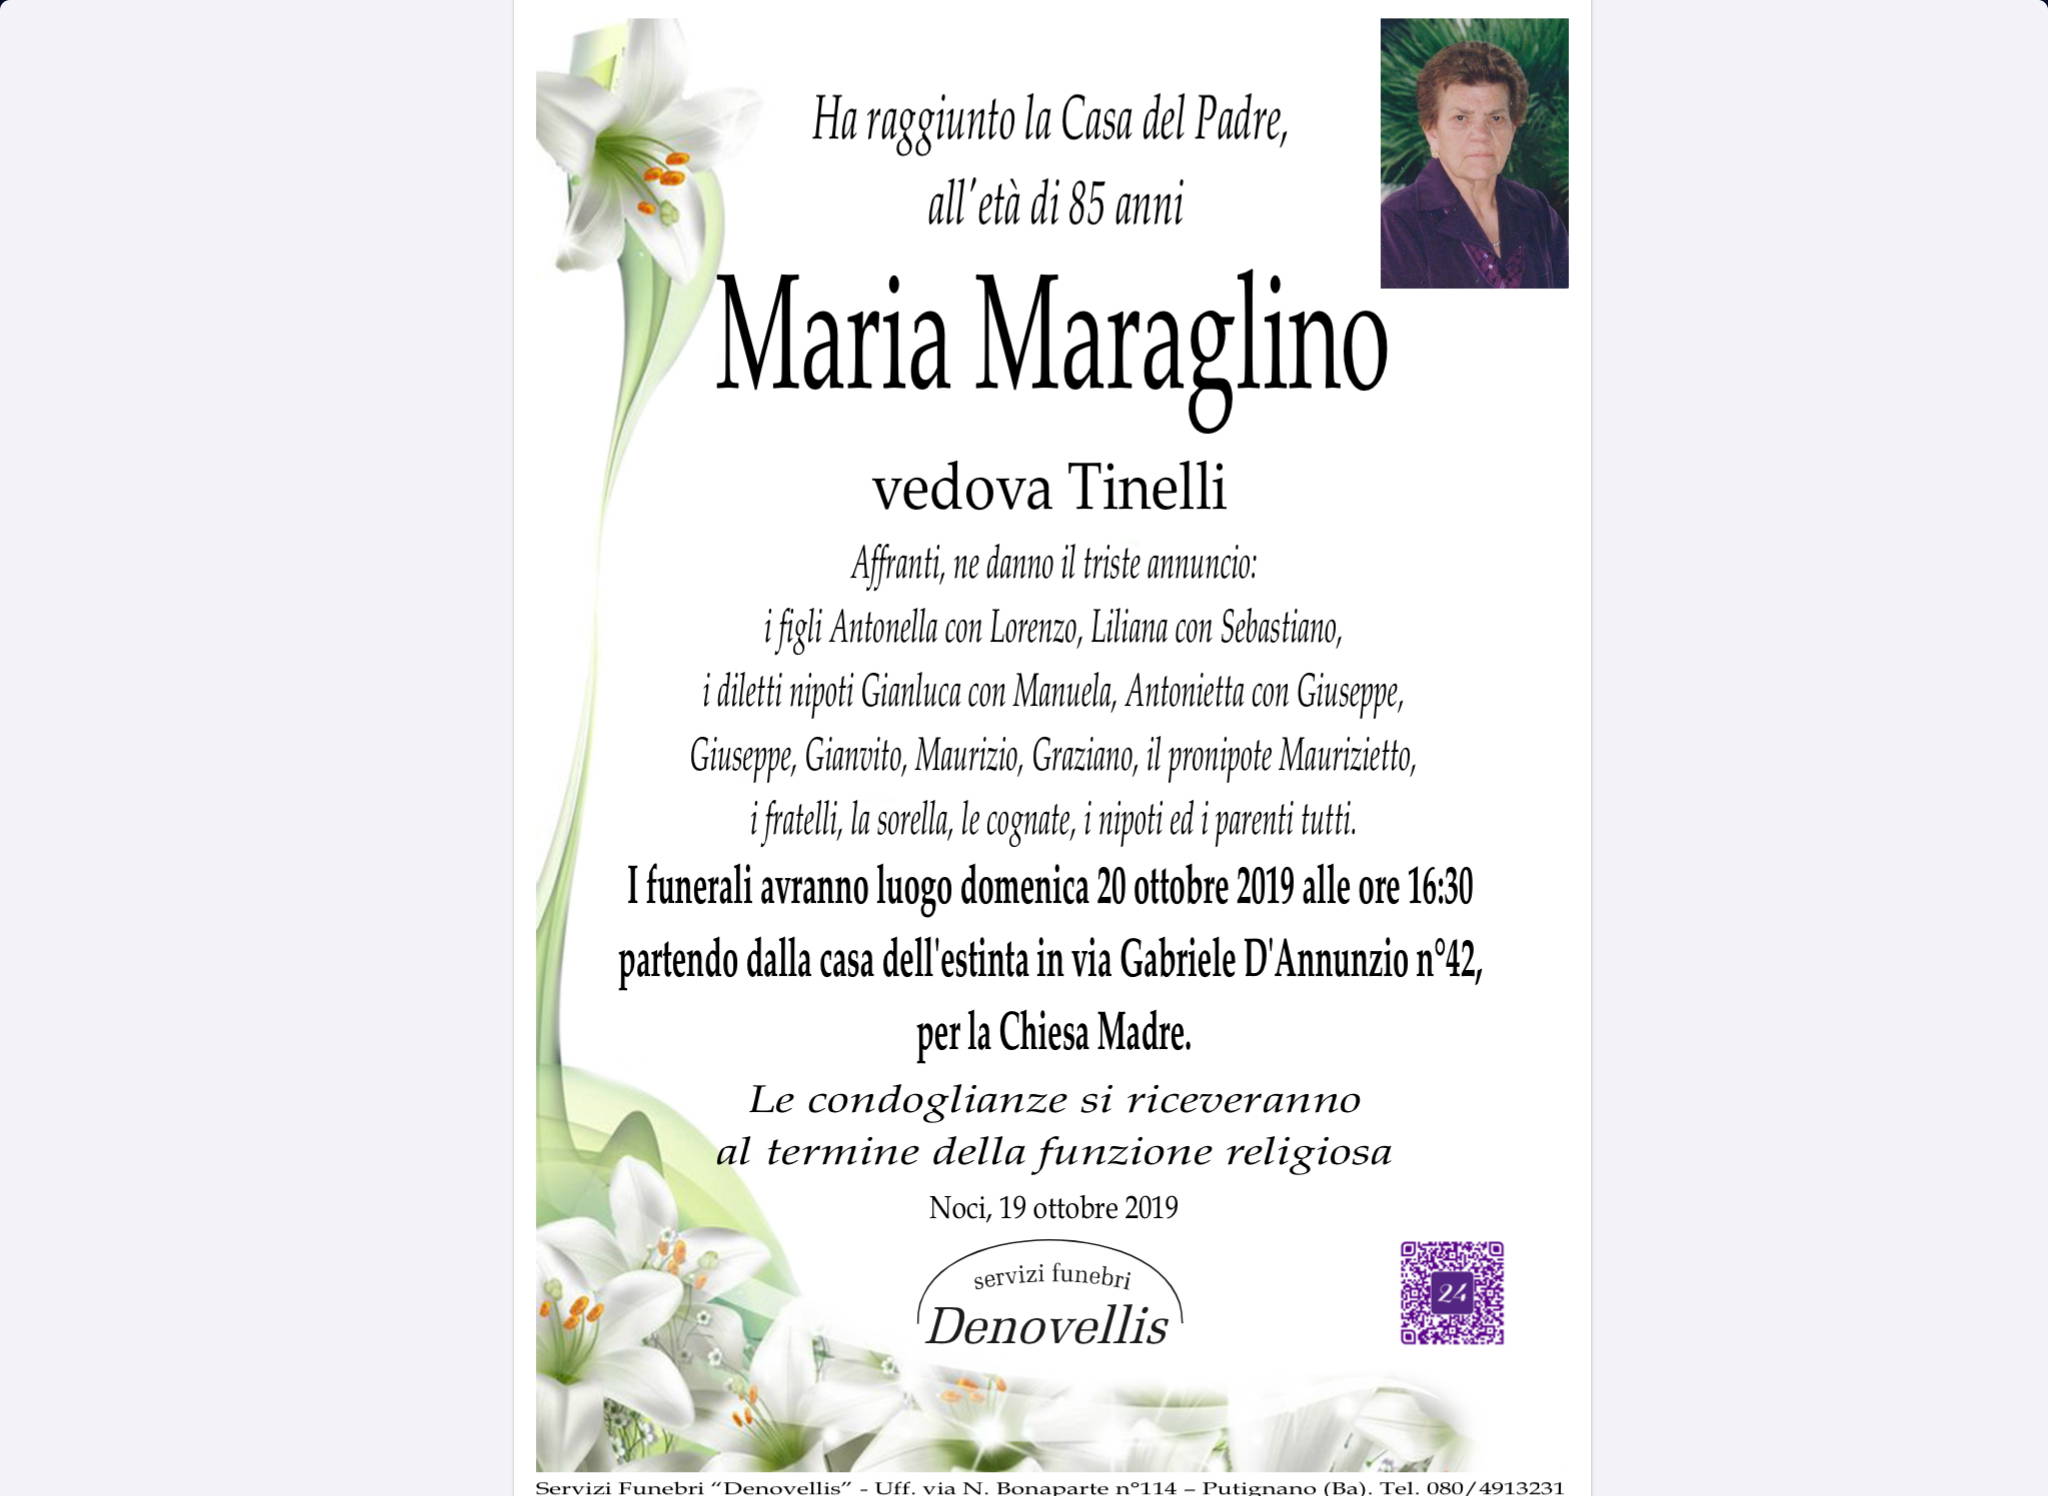 Maria Maraglino